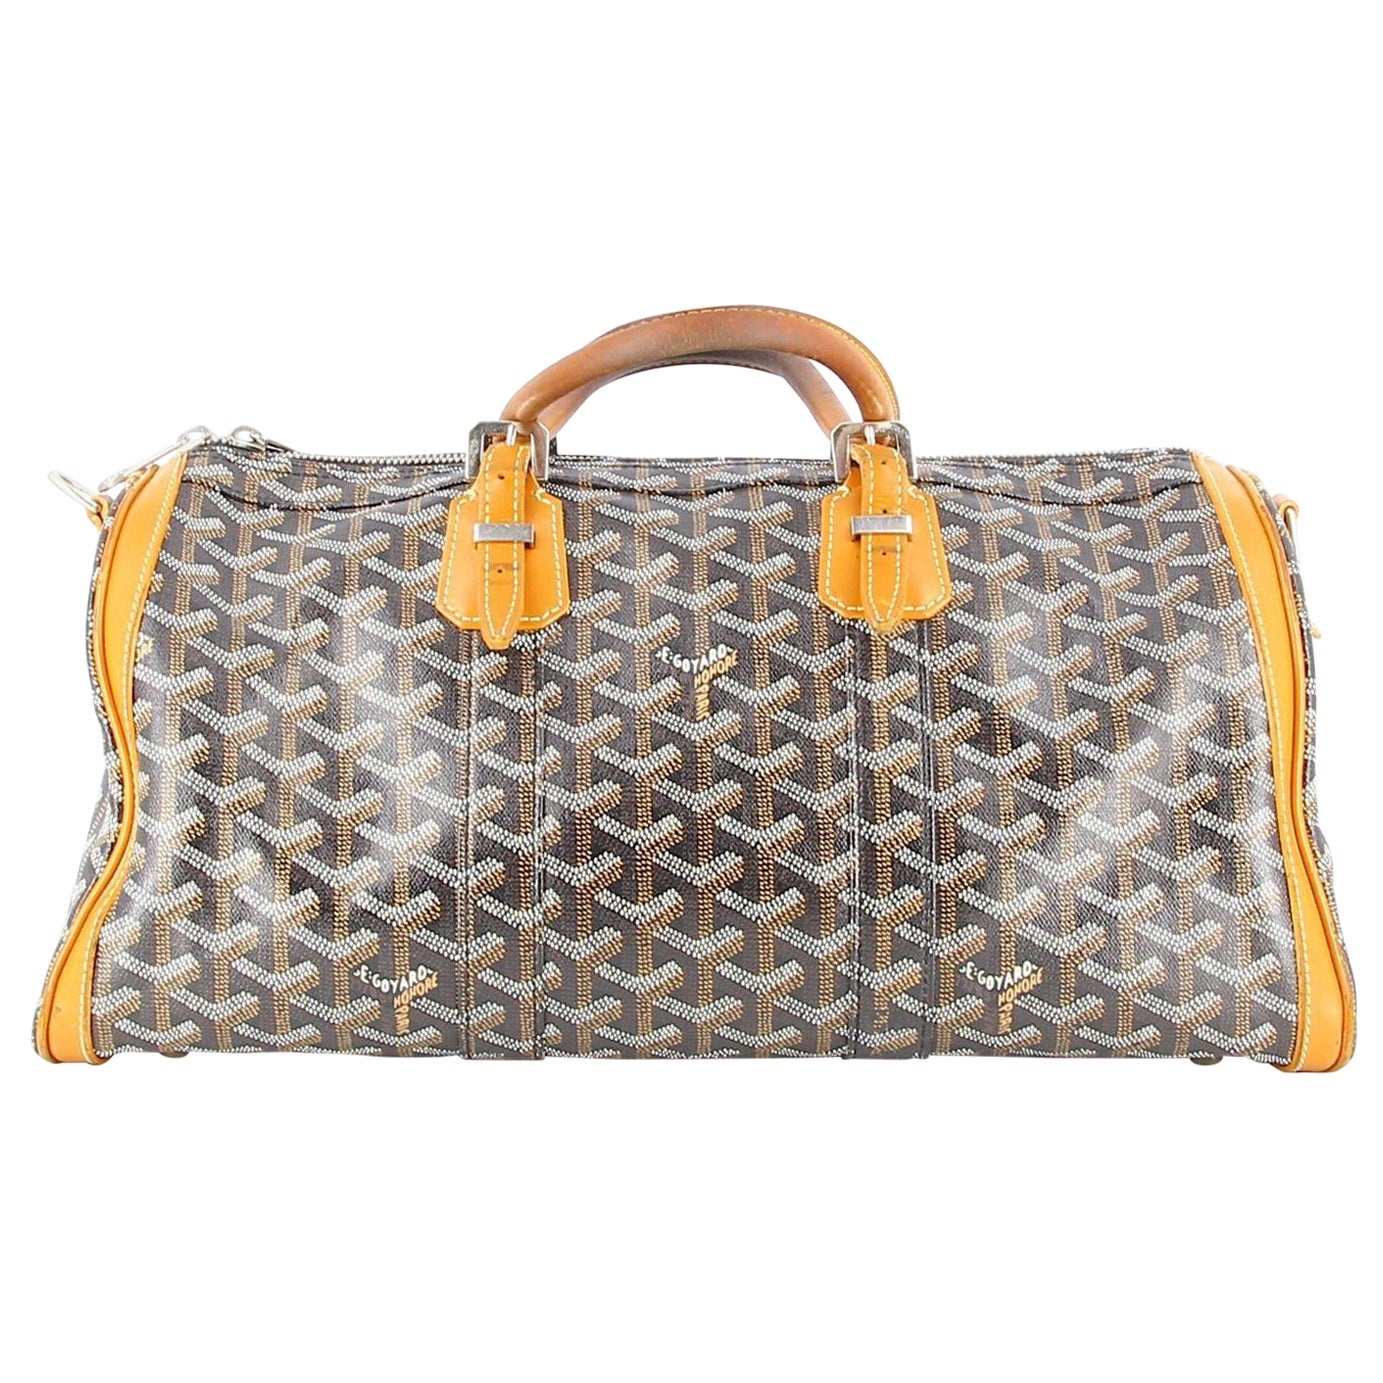 Goyard Duffle Bag - For Sale on 1stDibs  goyard duffle price, how much is  goyard duffle bag, goyard weekender